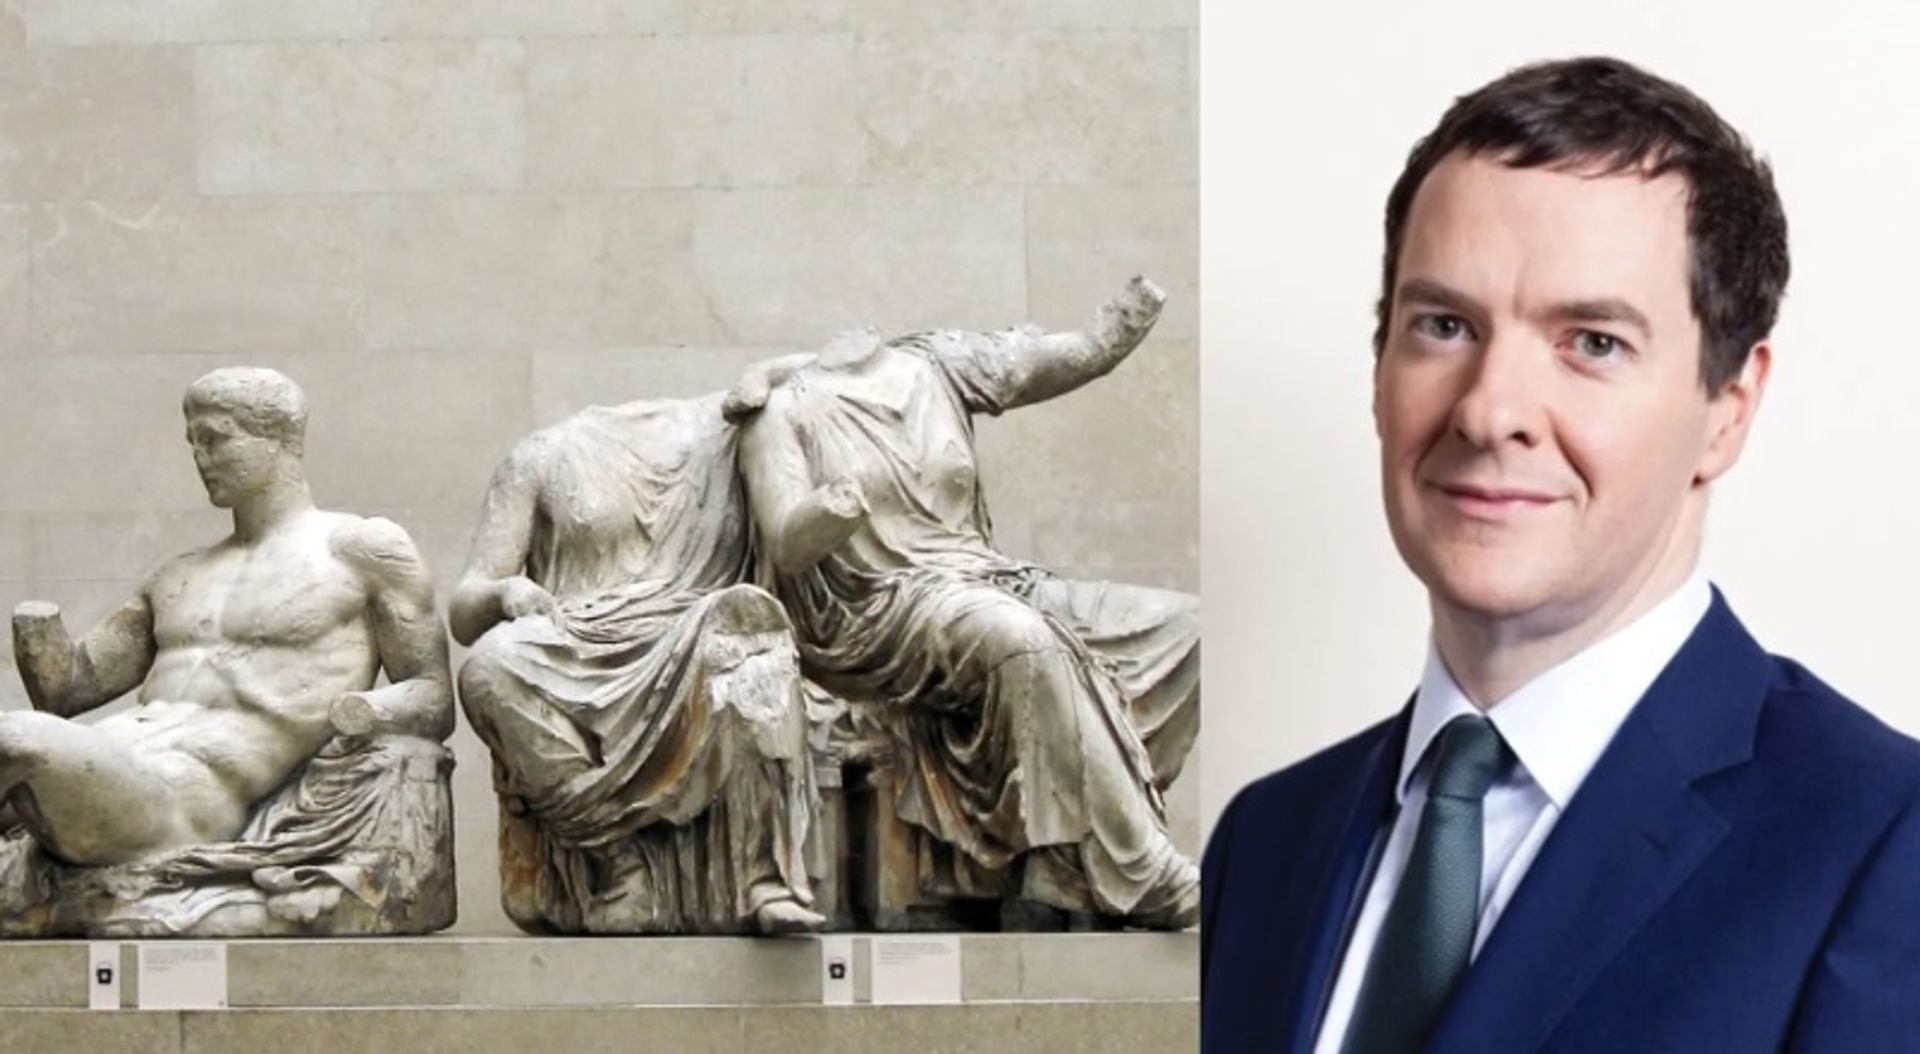 פסלי שיש הפרתנון במוזיאון הבריטי וג'ורג' אוסבורן

צילום שיש: ג'סטין נוריס CC; אוסבורן: HM Treasury